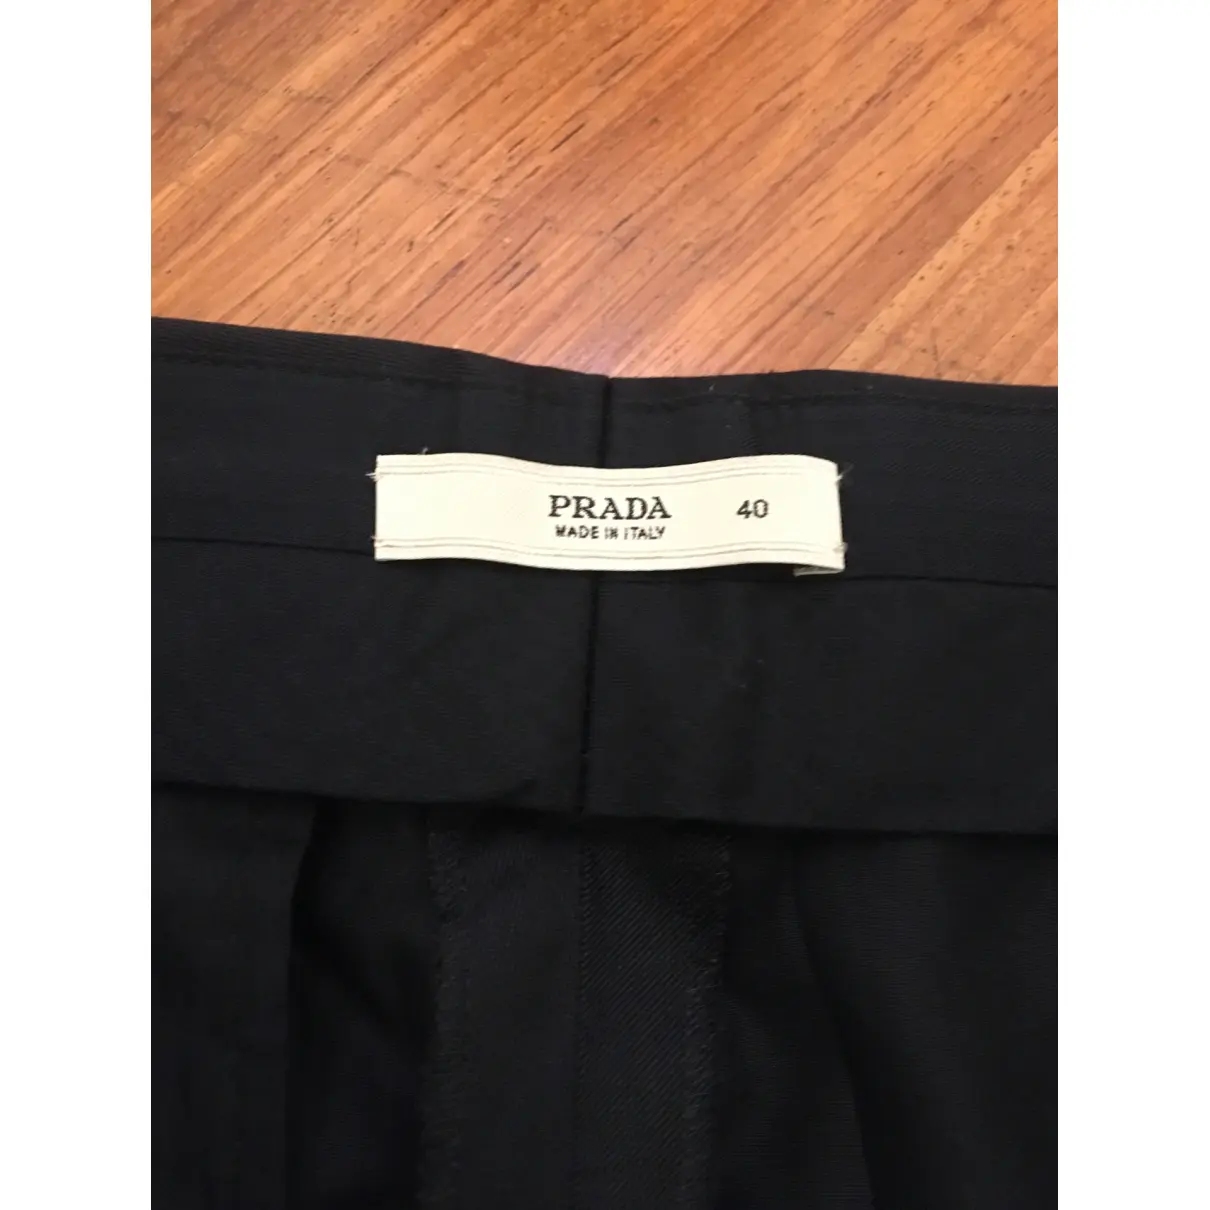 Buy Prada Shorts online